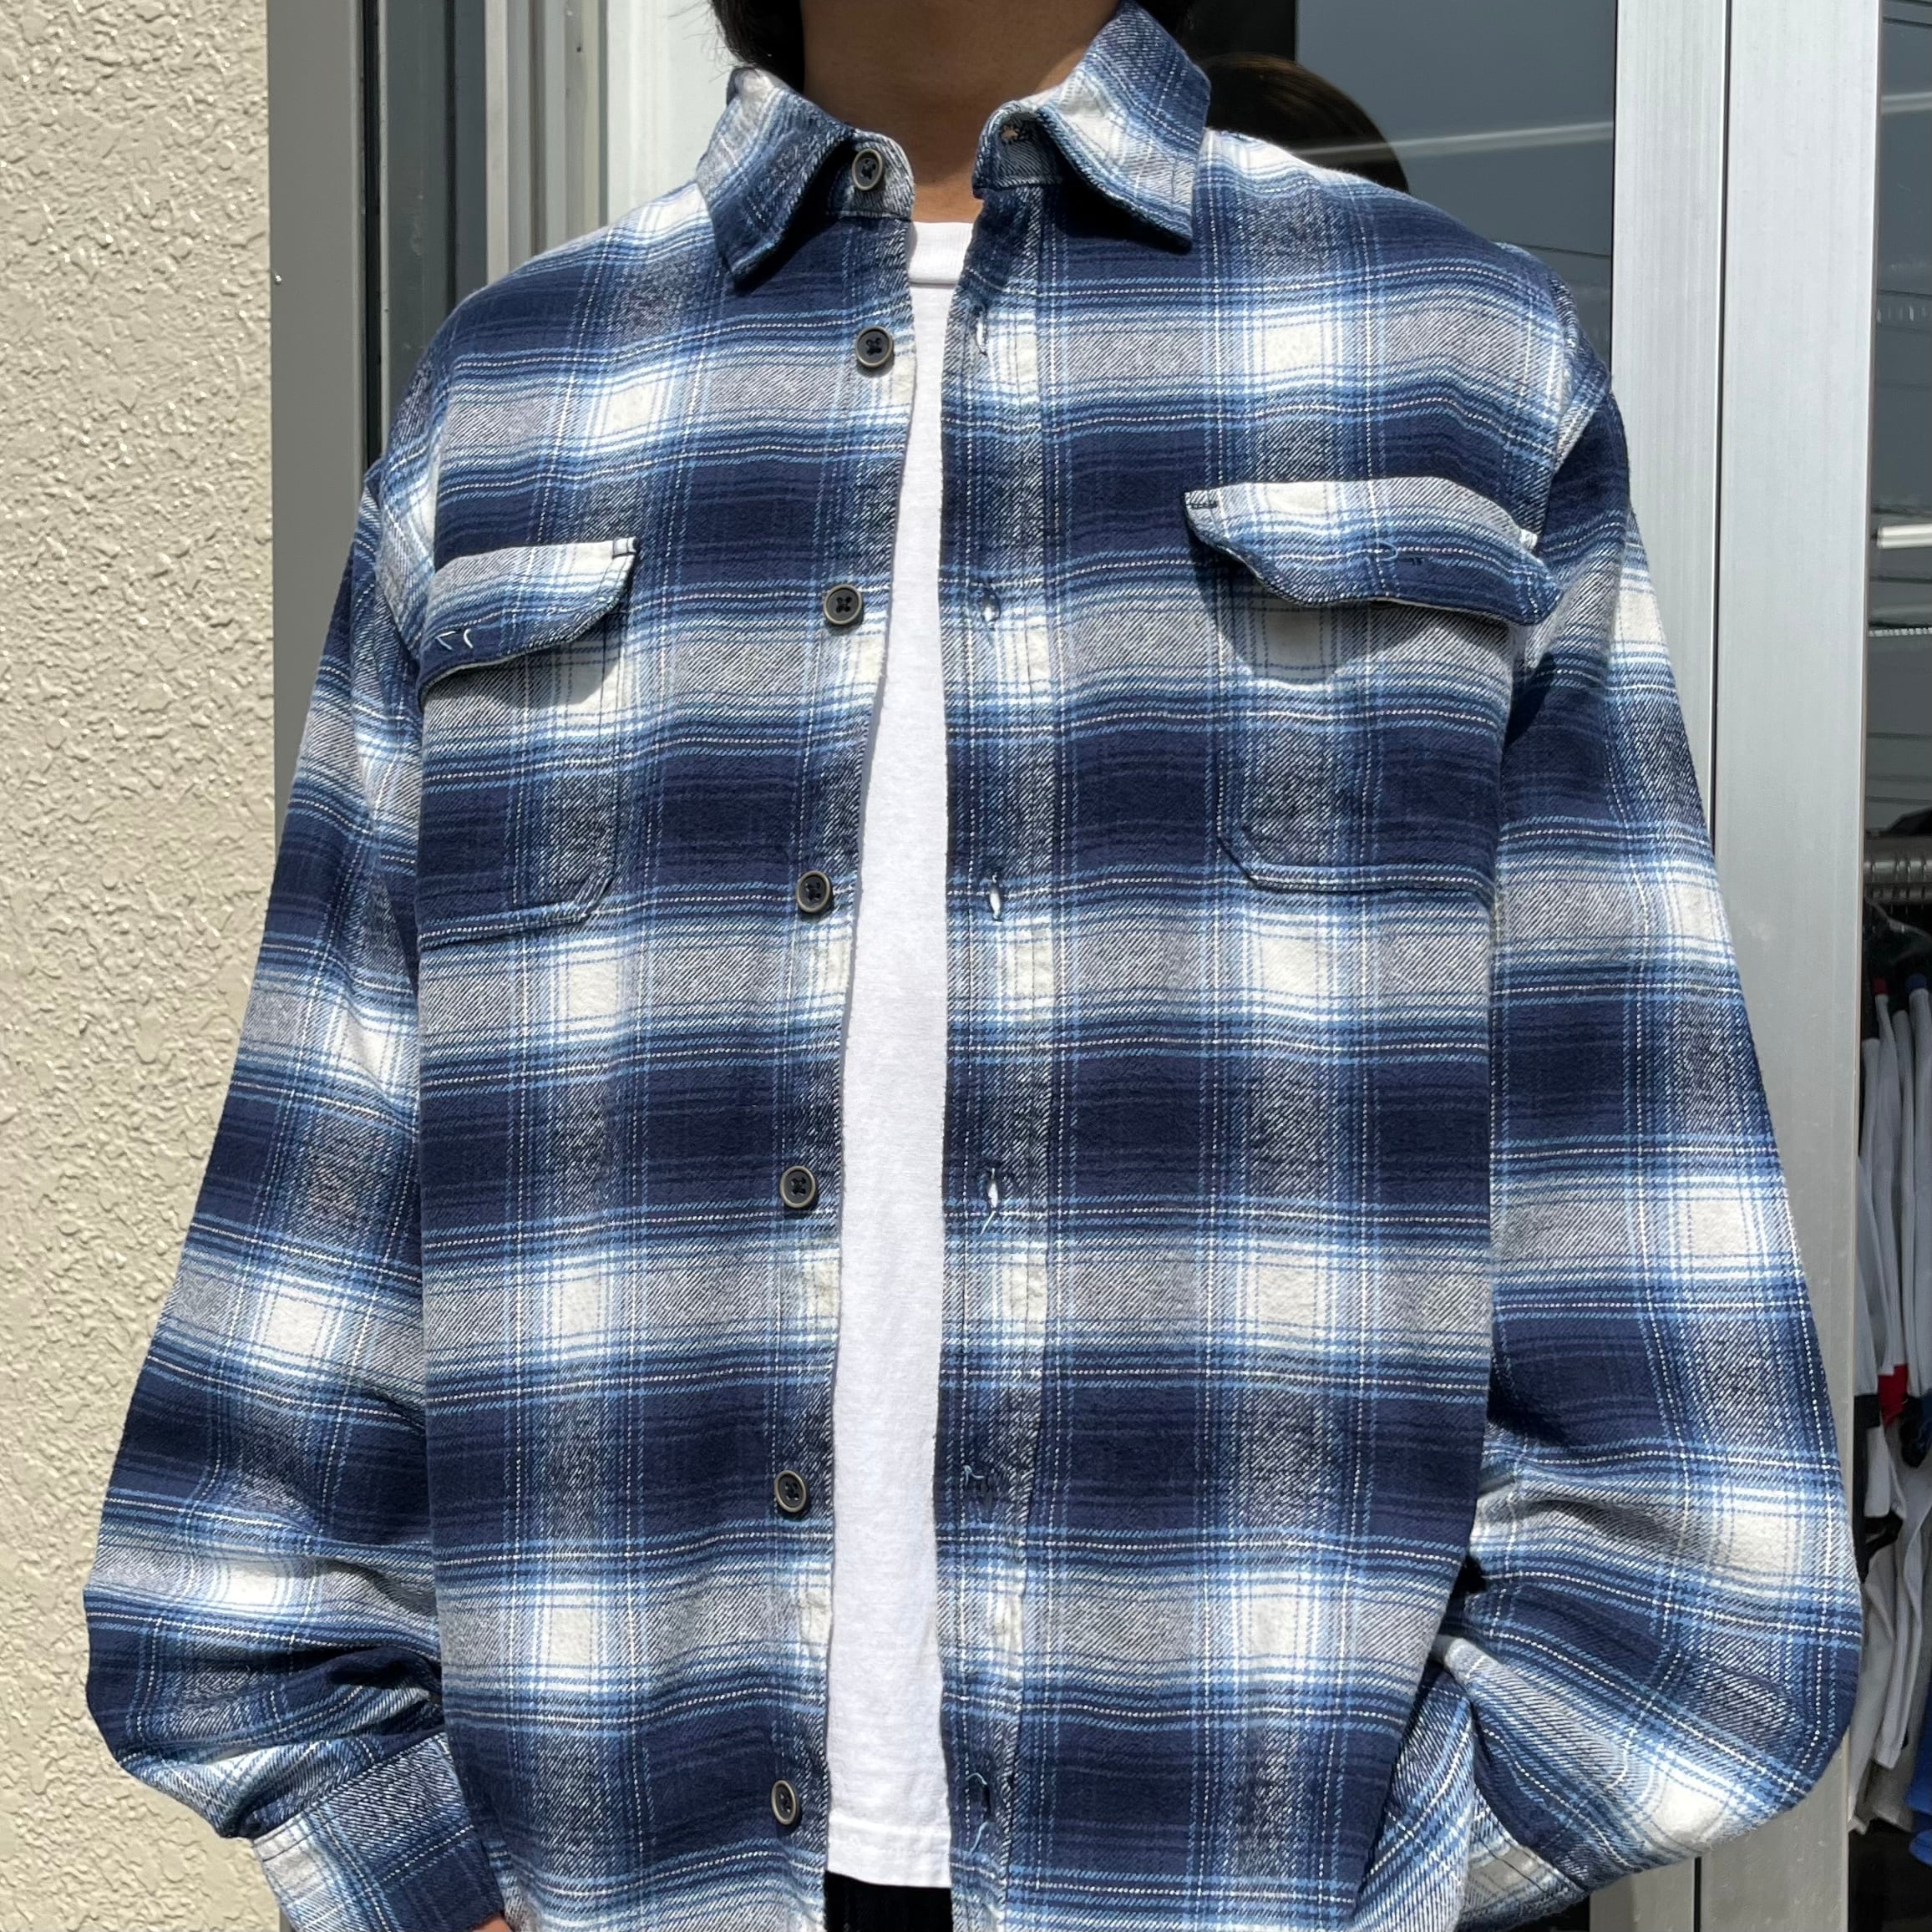 ■肉厚ヘビネル長袖ワークシャツ90sオンブレ柄でダークカラー総柄ヘビーネル